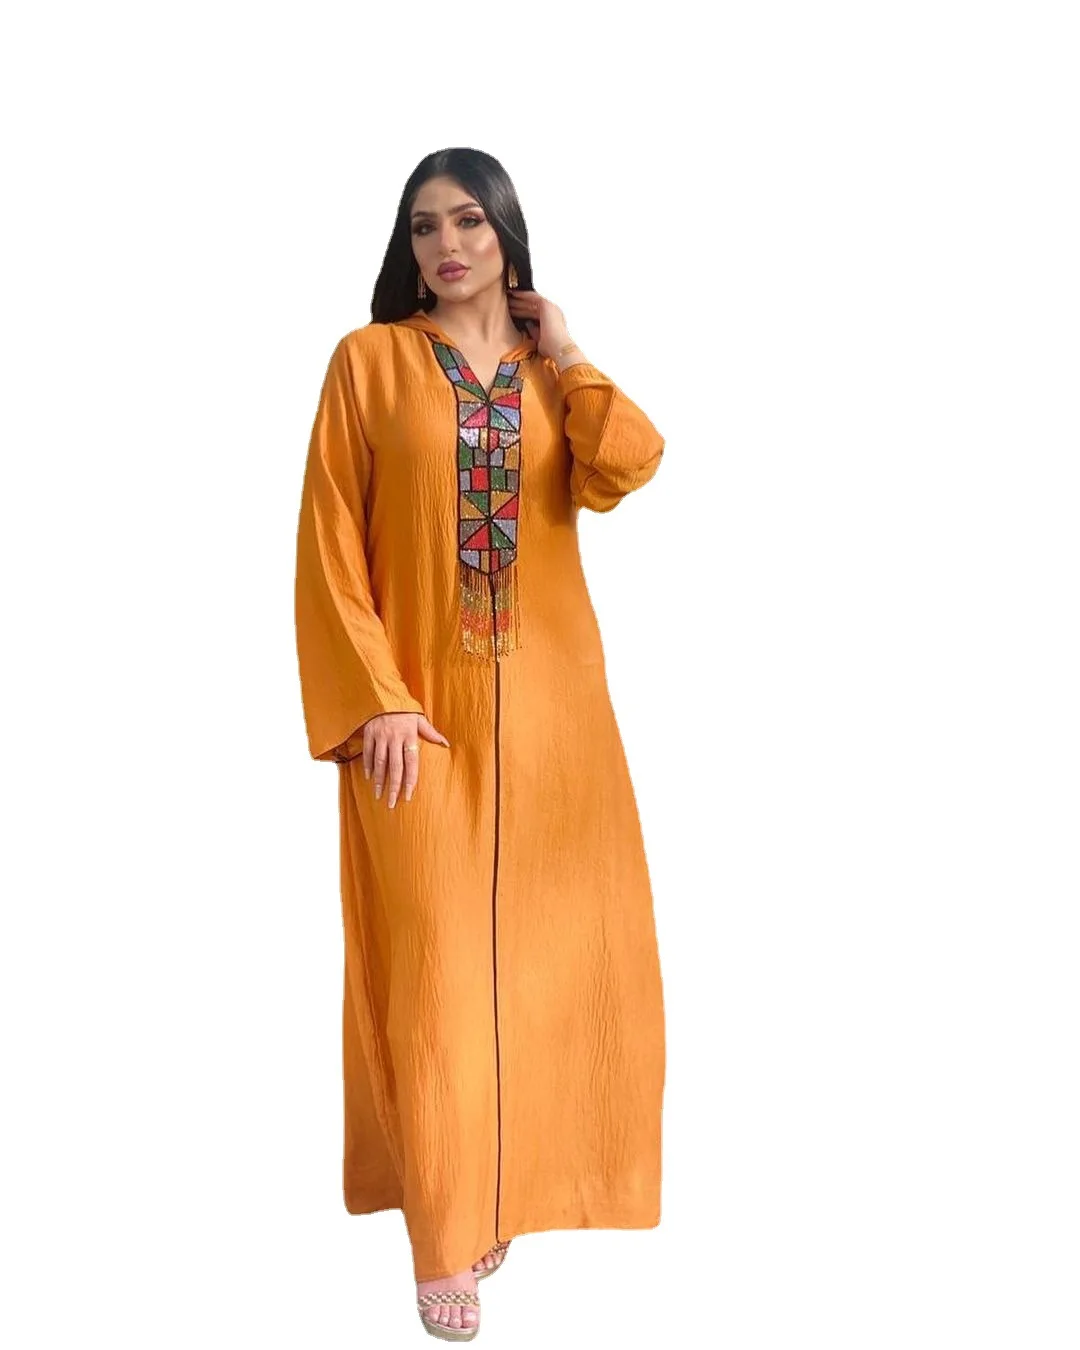 Middle East Muslim Women's Wear Diamond Tassel Hooded Arab Robe Maxi Dress